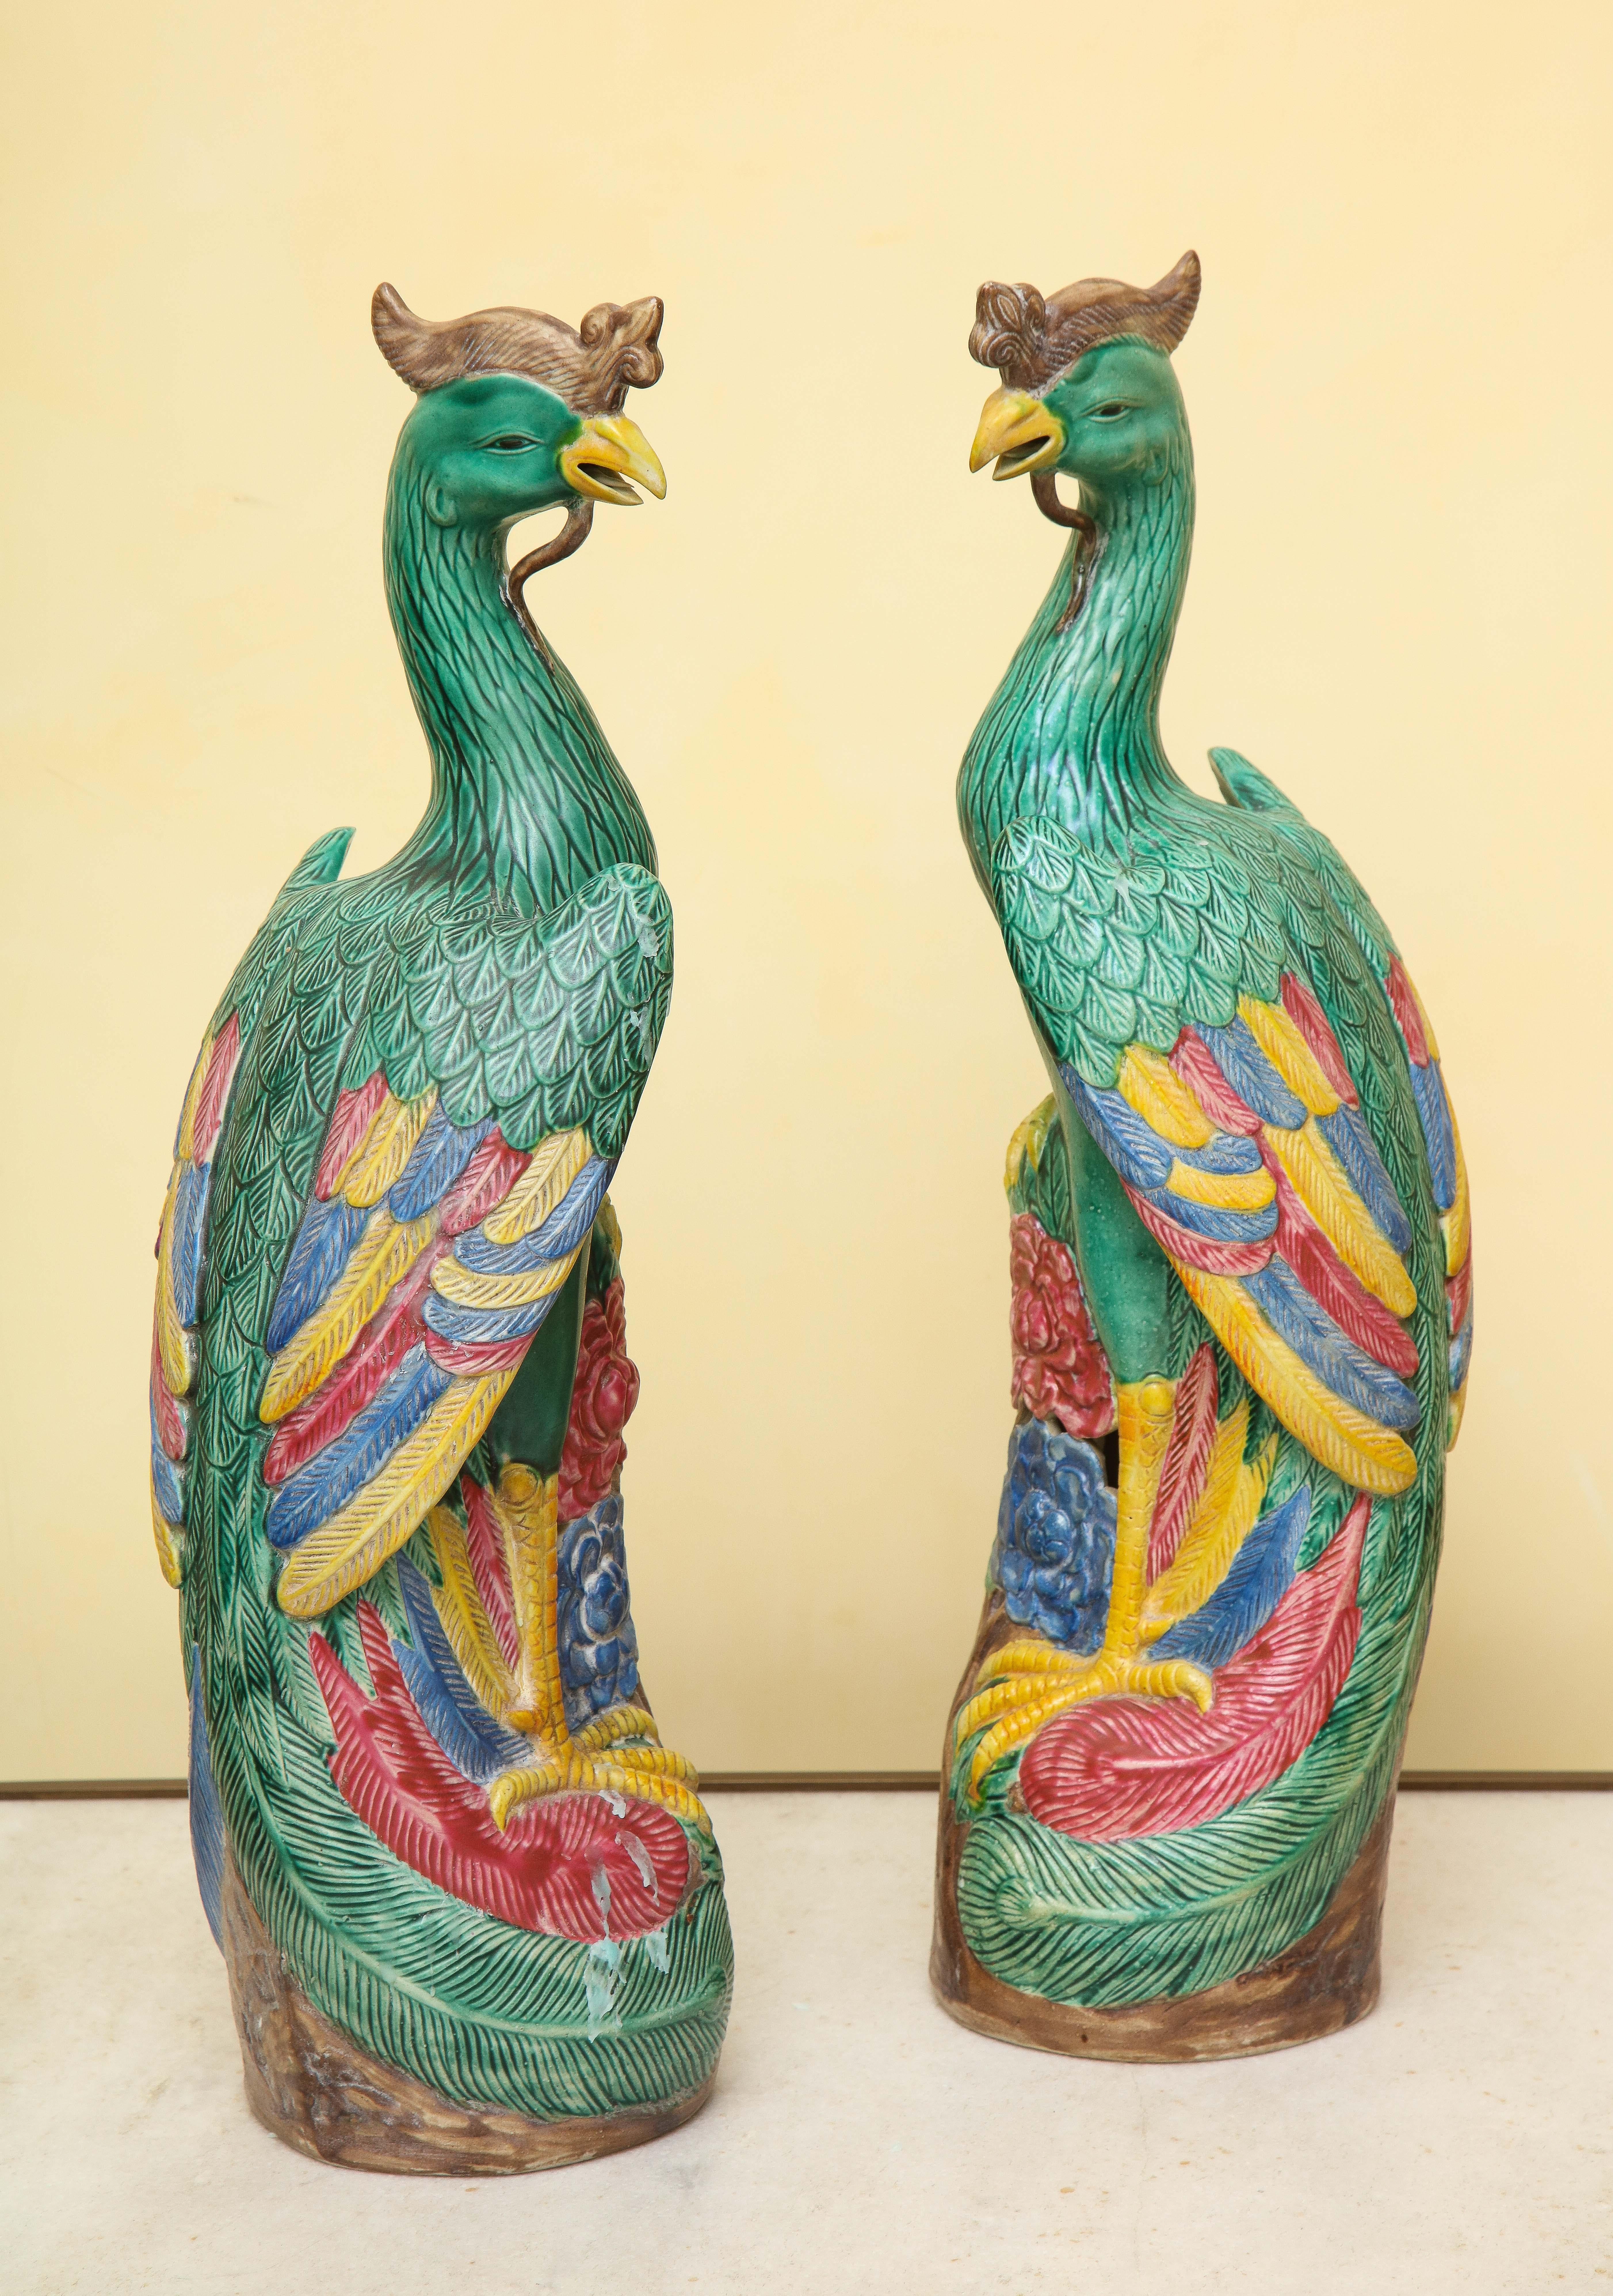 Porcelaine Paire d'oiseaux Phoenix en porcelaine chinoise de style export Ho-Ho